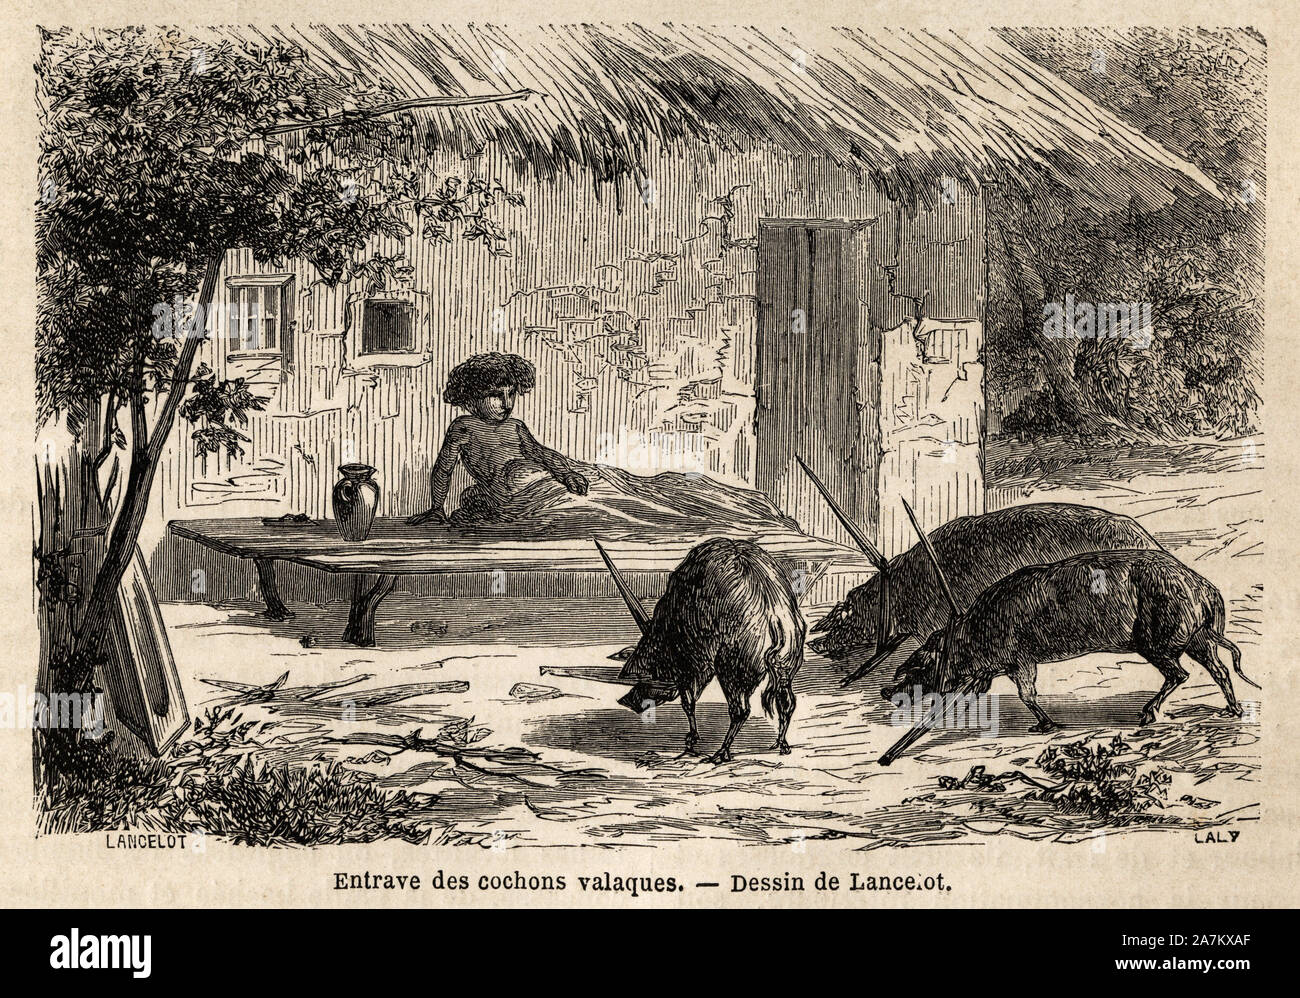 Entraves des pattes immobilizees anterieures, ainsi, Les cochons valaques, en Roumanie. Tiefdruck gießen illustrer Le voyage de Paris ein Bukarest, de Lanc Stockfoto